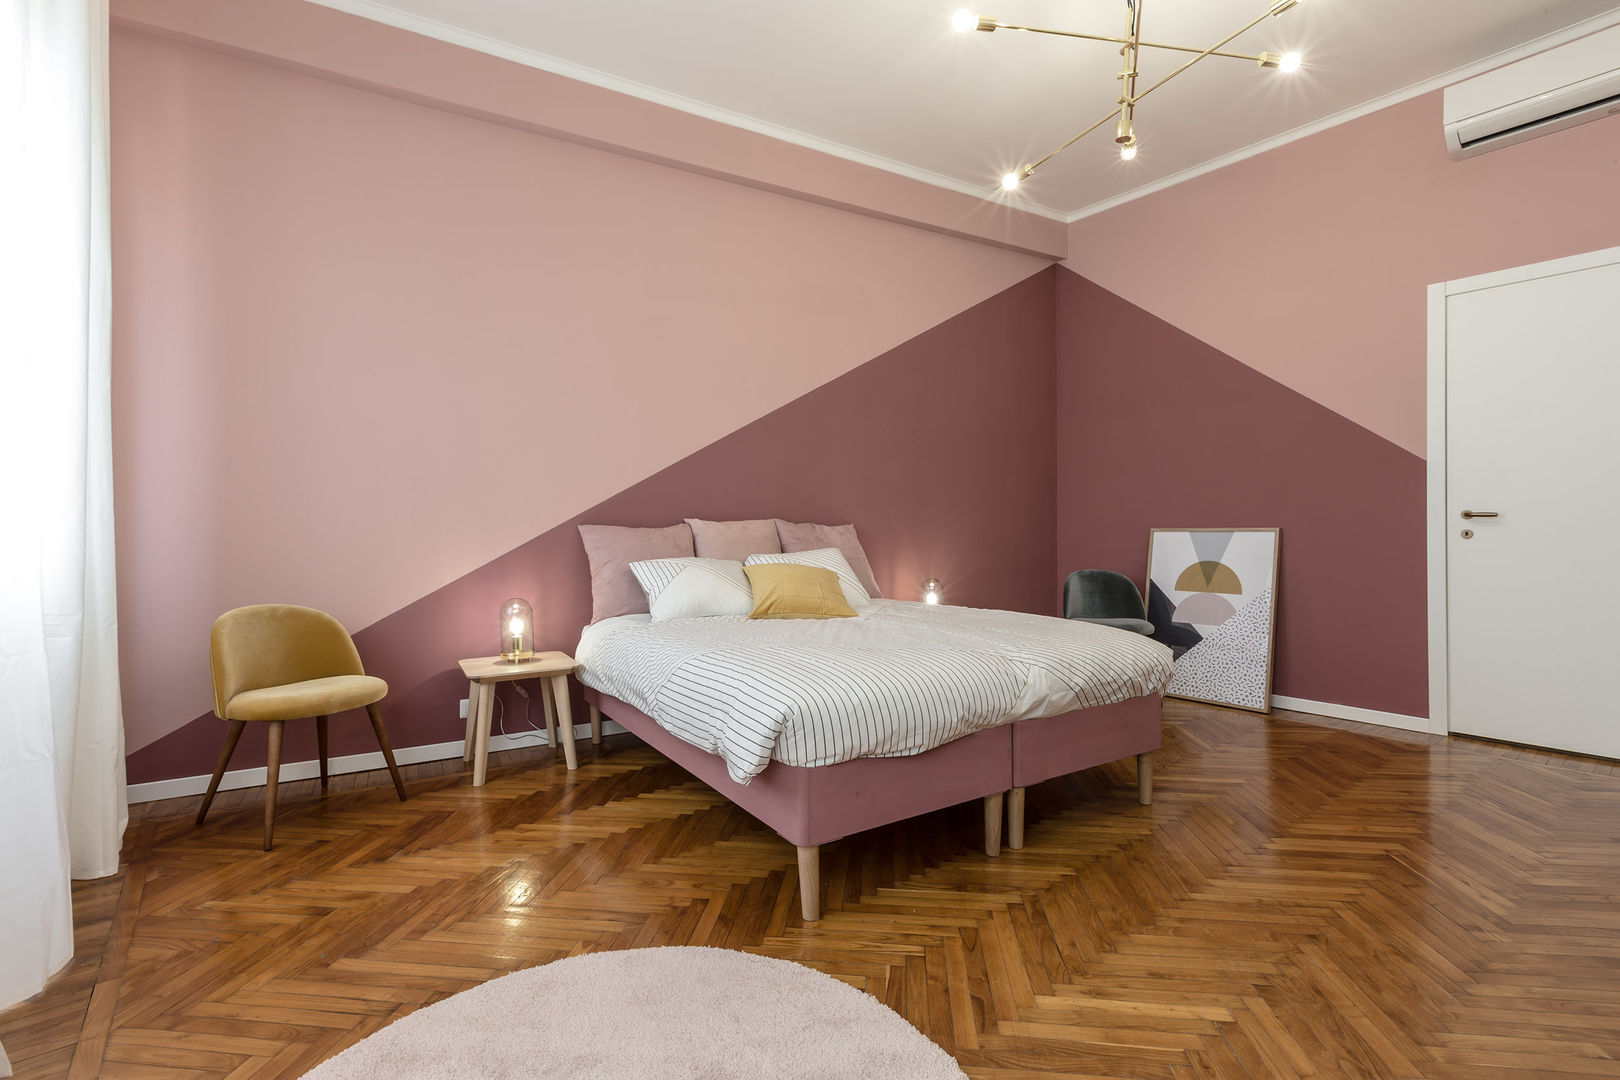 Casa MS.2: Intervento di Relooking in un appartamento a Milano, Architrek Architrek Cuartos de estilo moderno